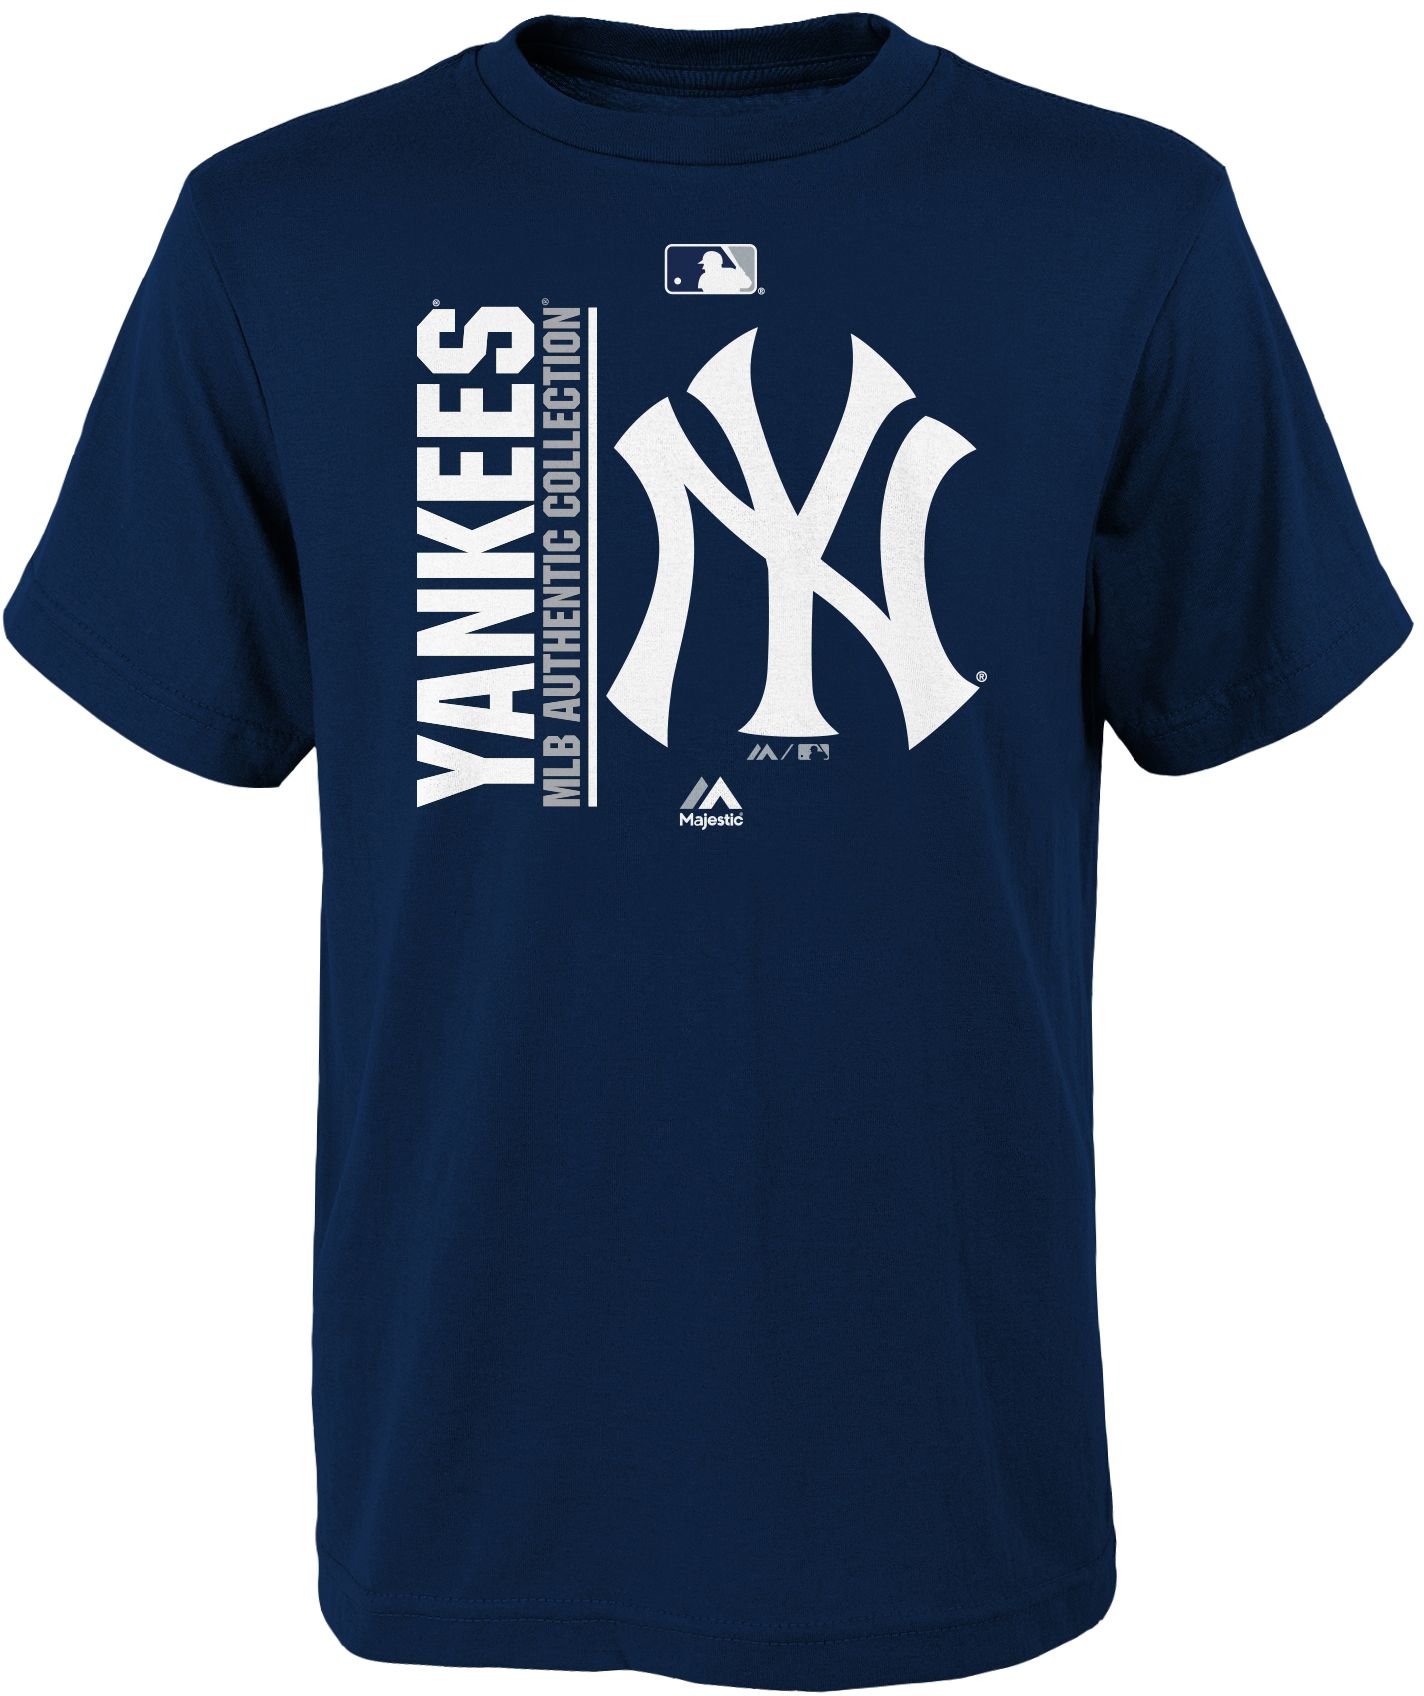 New York Yankees Apparel & Gear | DICK'S Sporting Goods